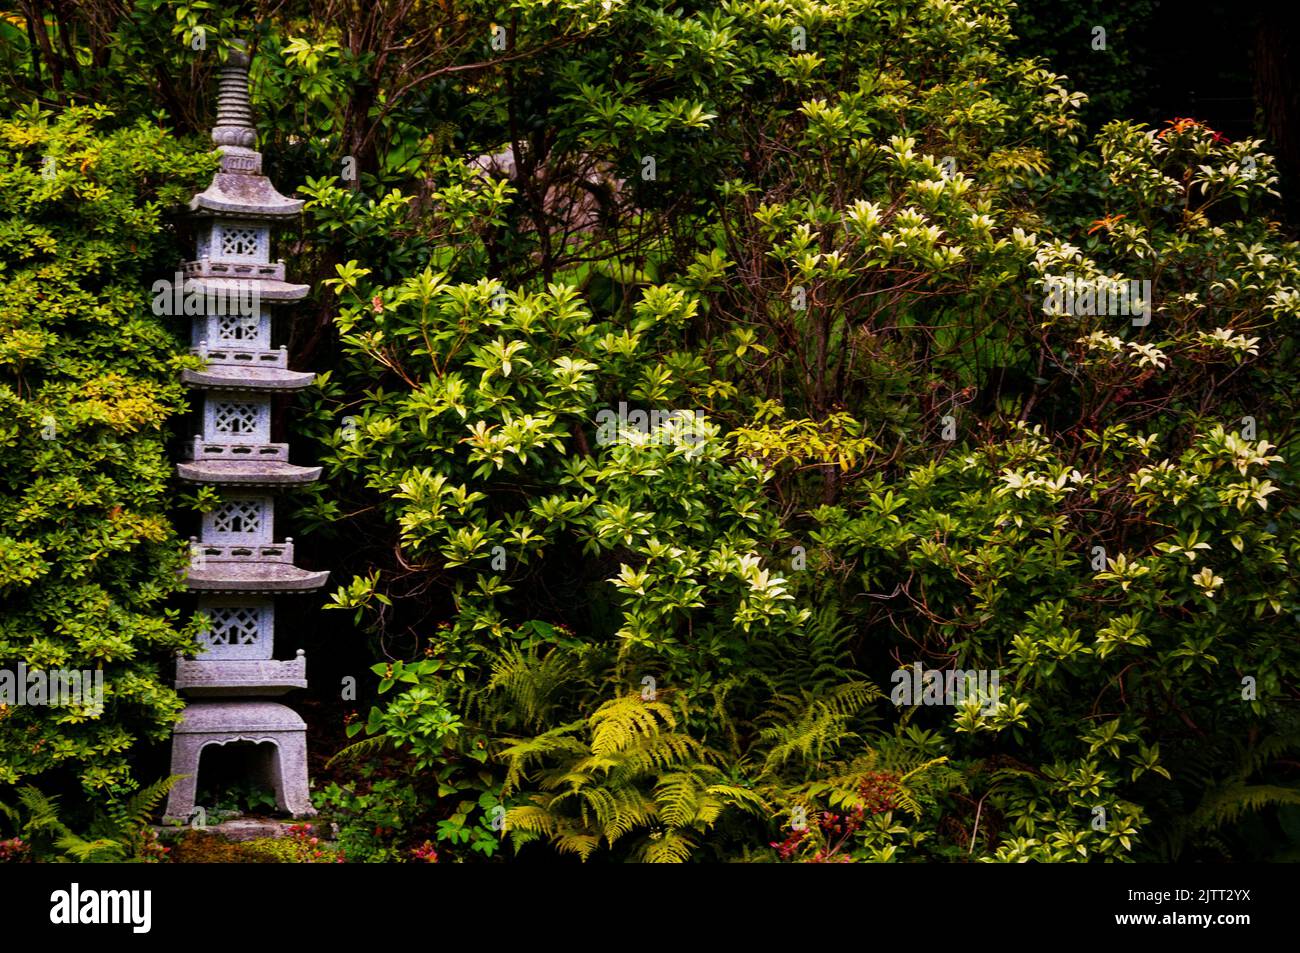 Stone lanterns in the Japanese Garden at Powerscourt Garden in County Wicklow, Ireland. Stock Photo